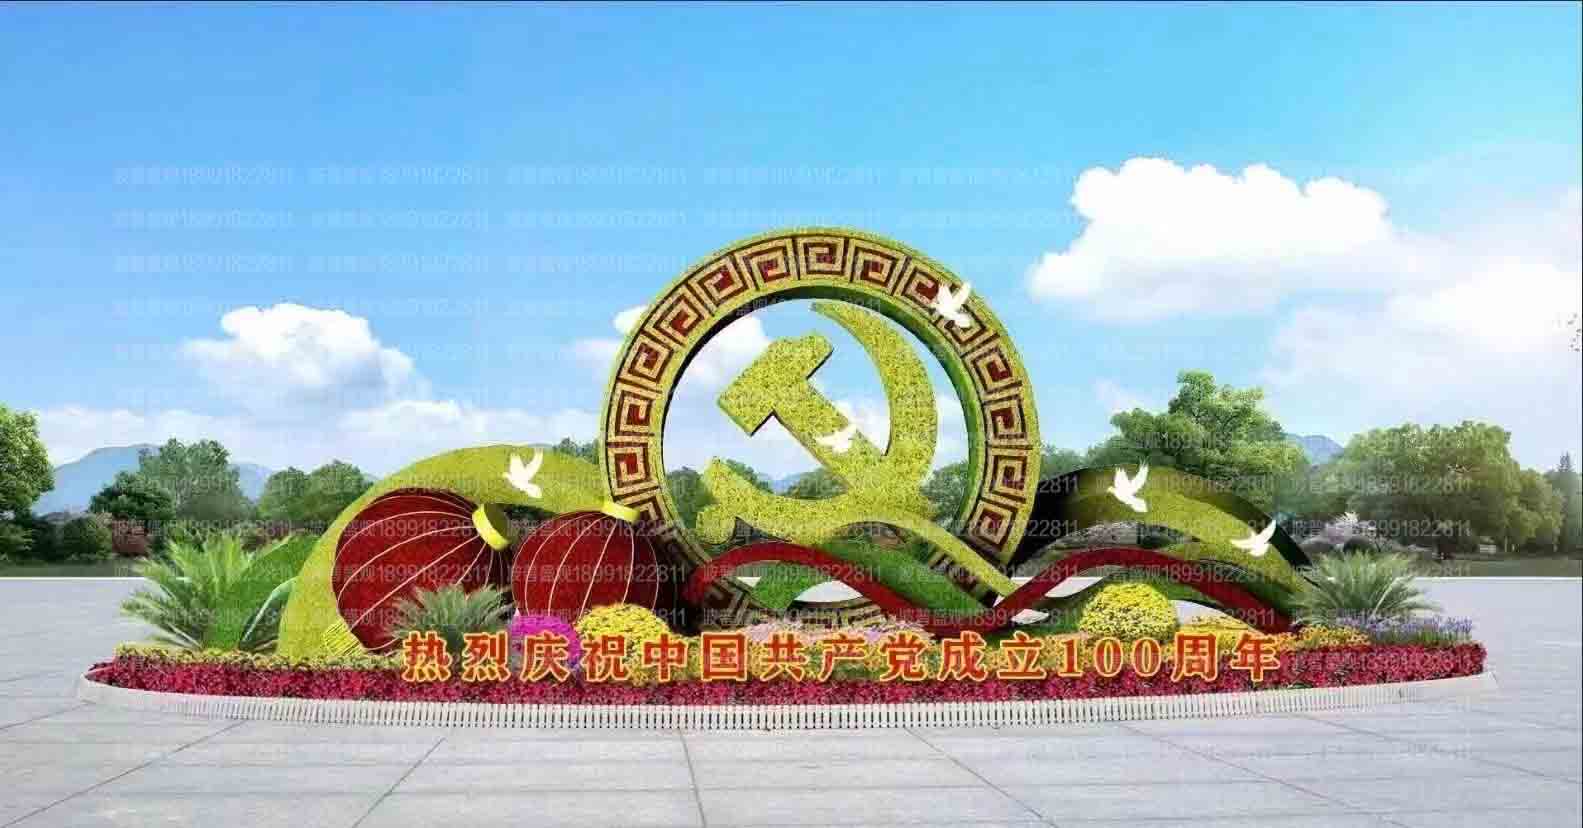 建黨100周年植(zhi)物雕塑造(zao)型